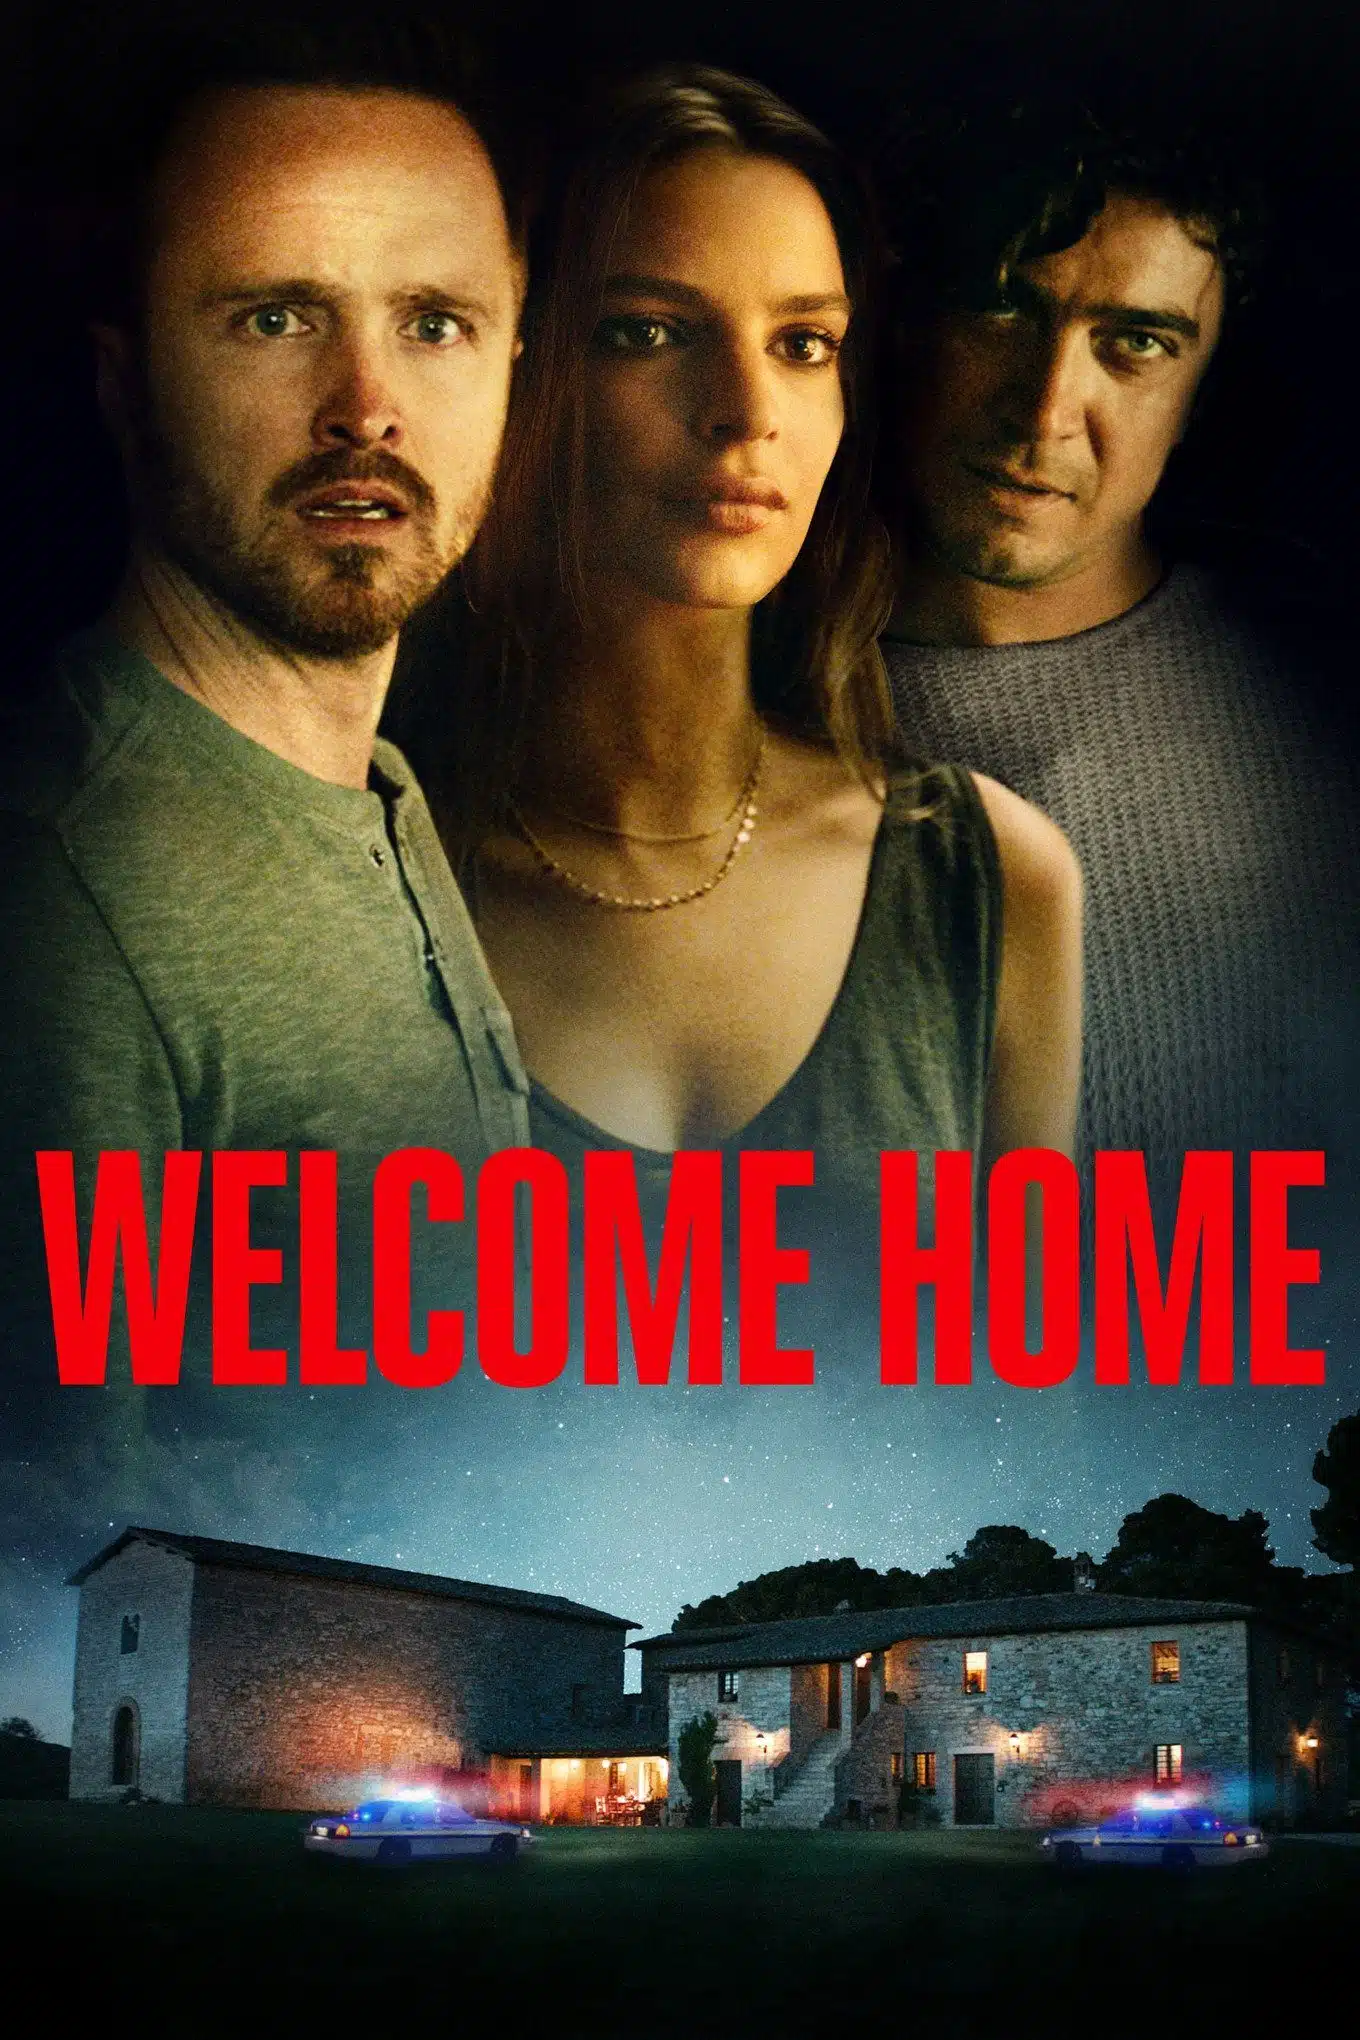 Welcome home (2019). Un thriller sulle fragilità di coppia - Recensione